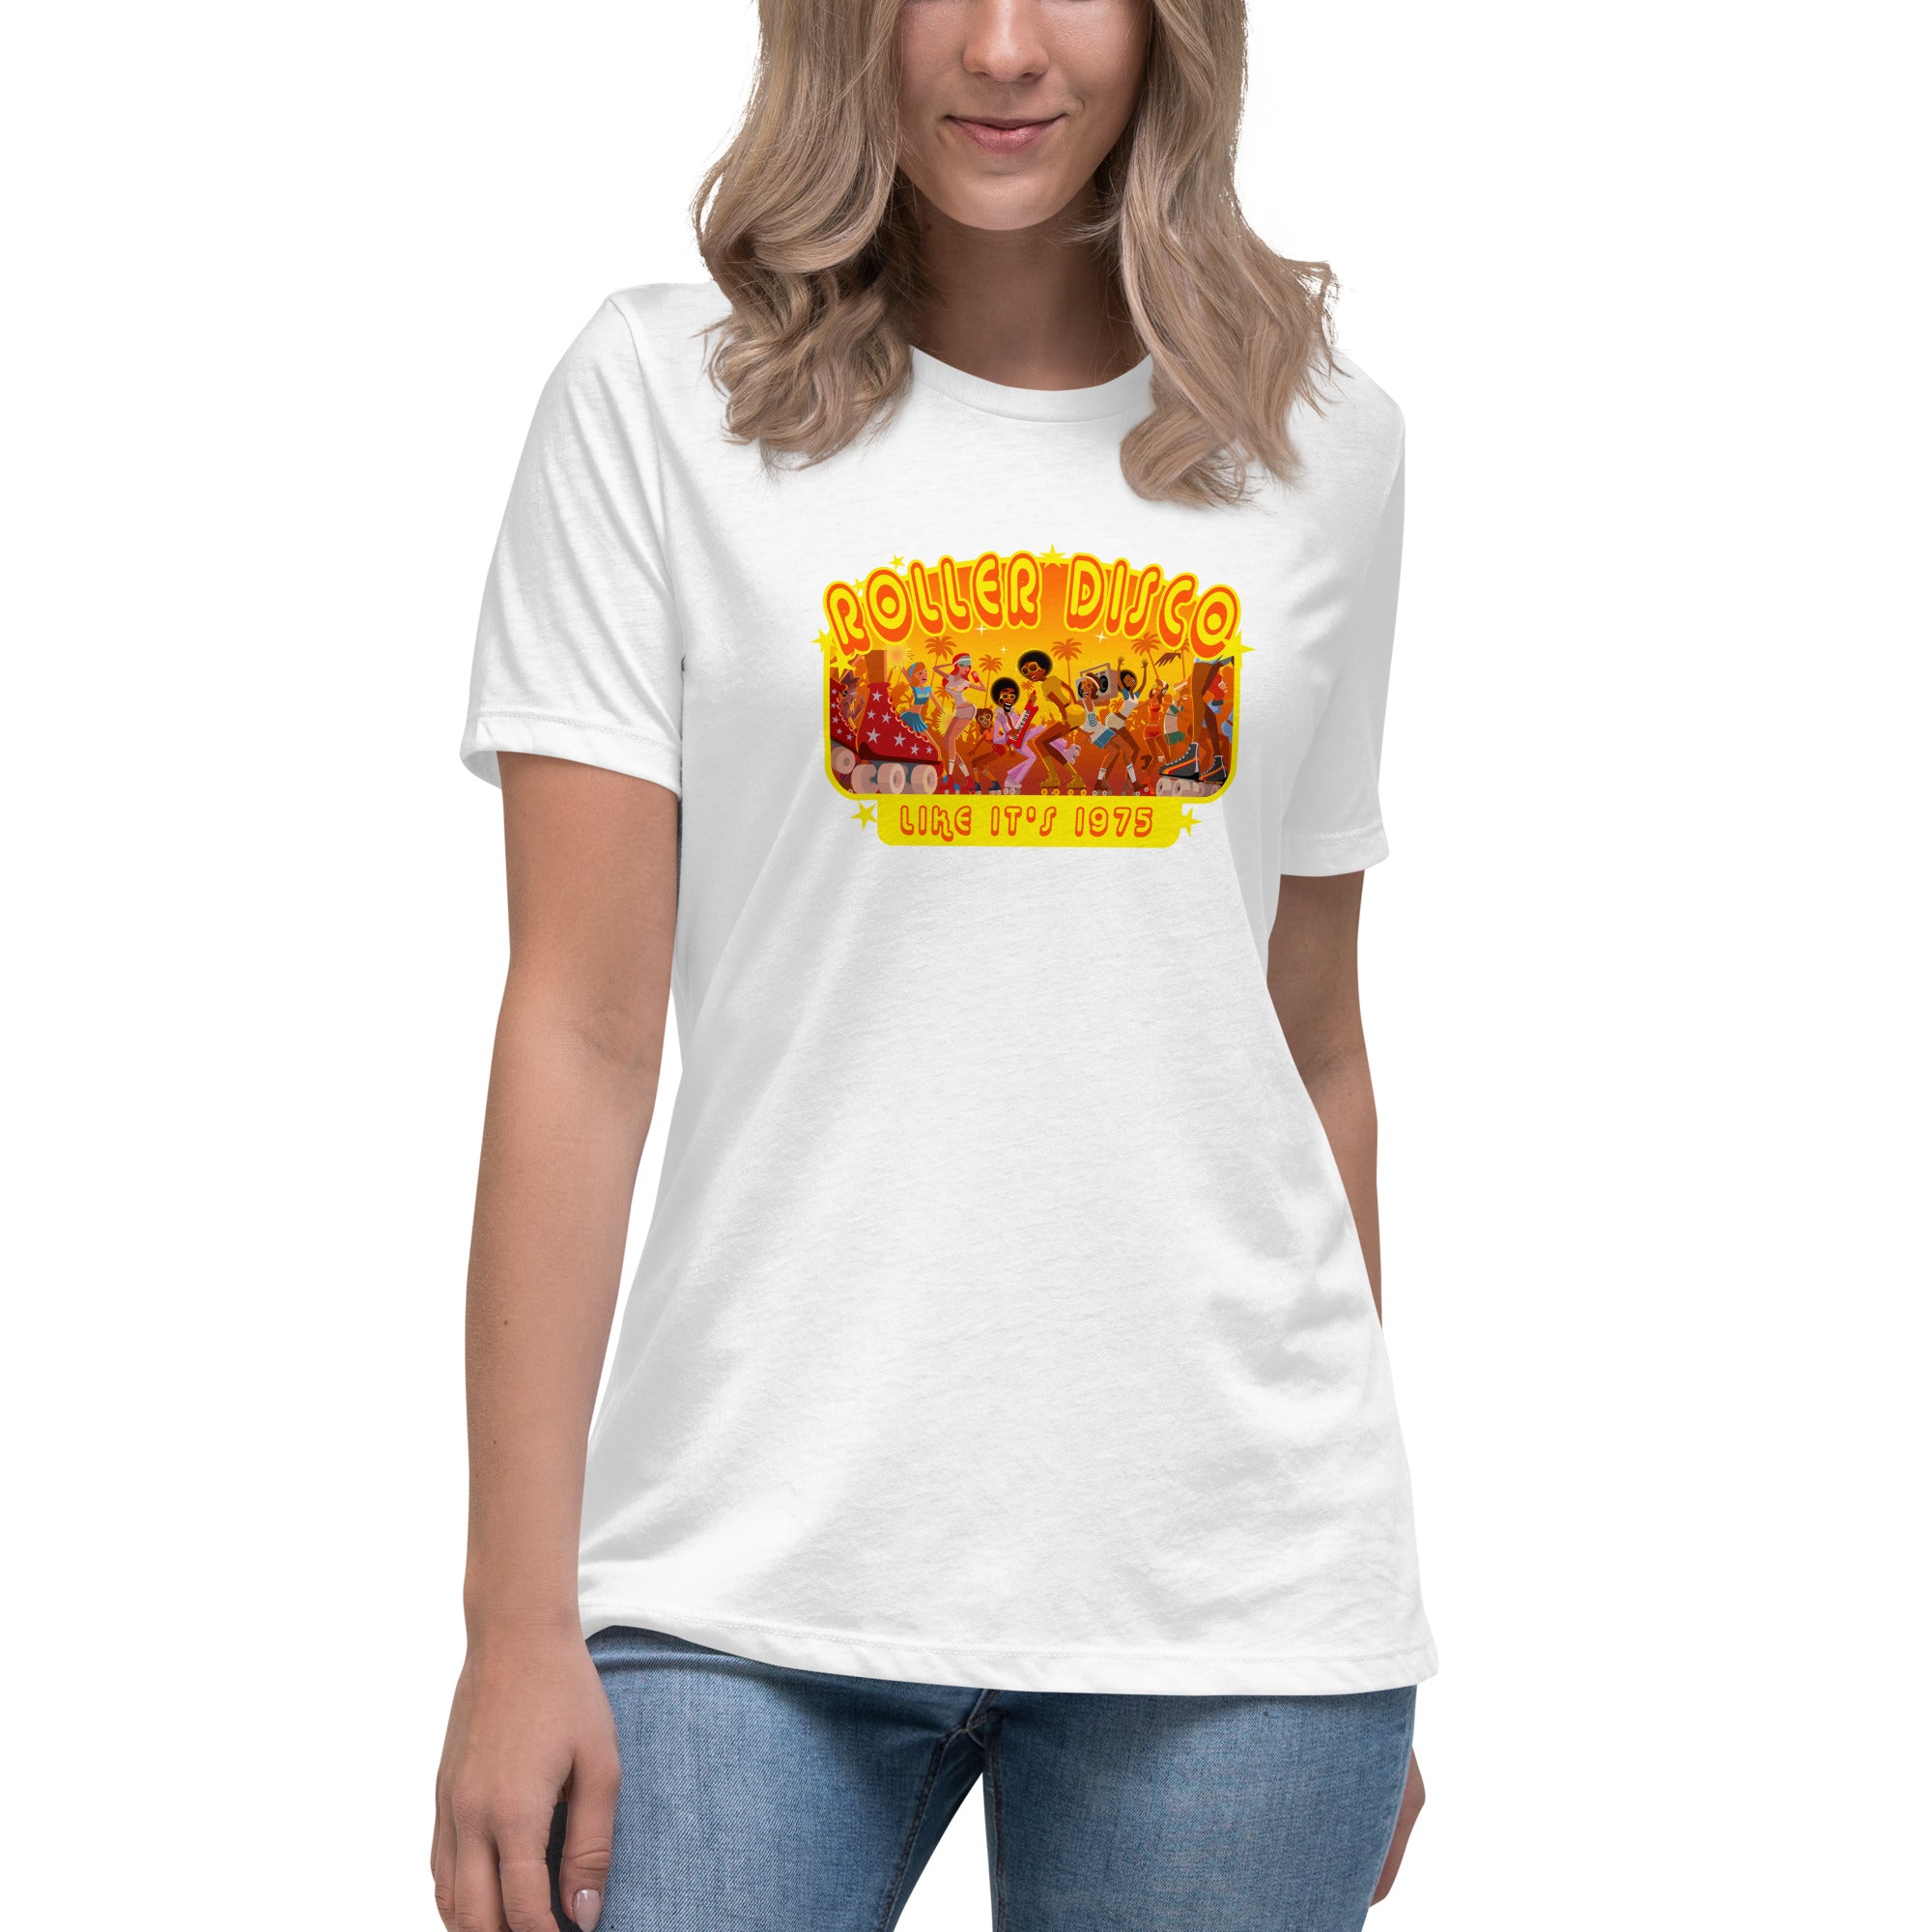 T-shirt décontracté pour femme Roller Disco 1975